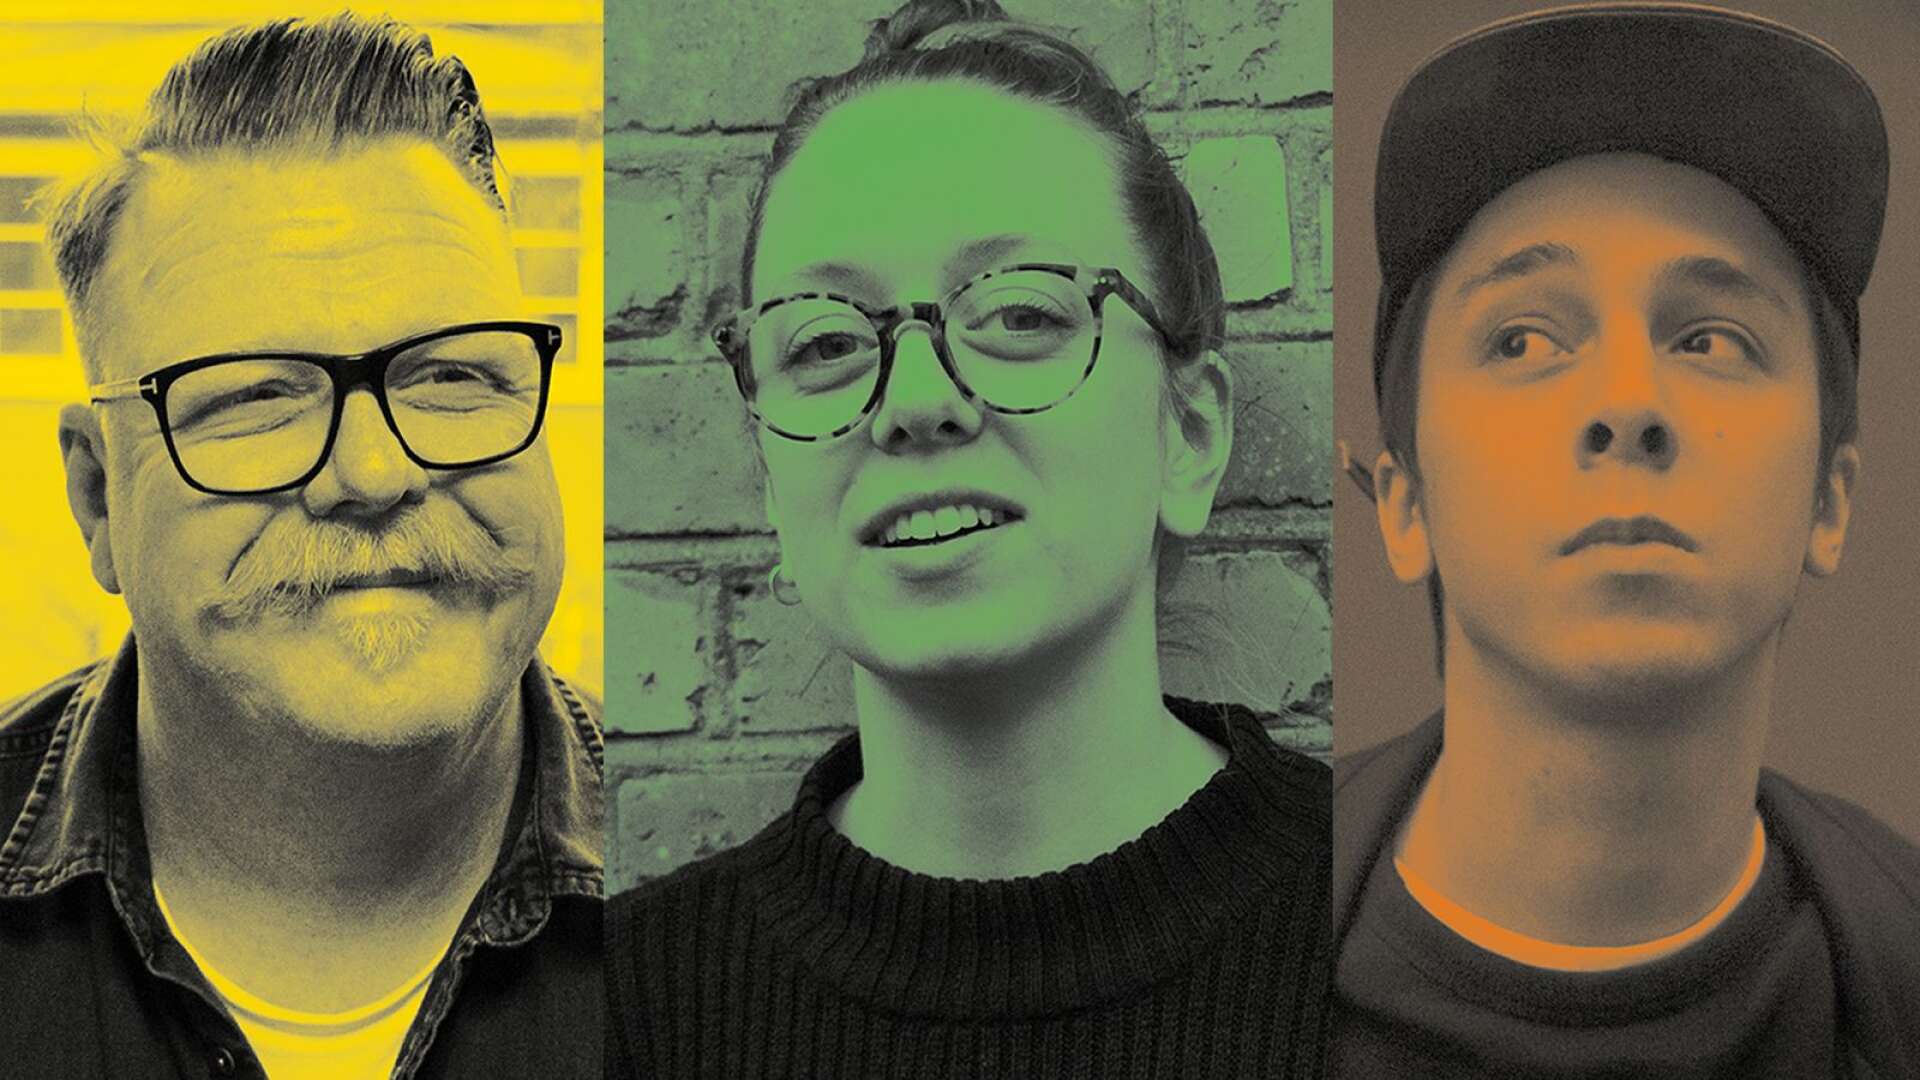 Fredrick Berntsson, Ia Öberg och Sam Florian pratar om det värmländska musikåret ur tre olika perspektiv.